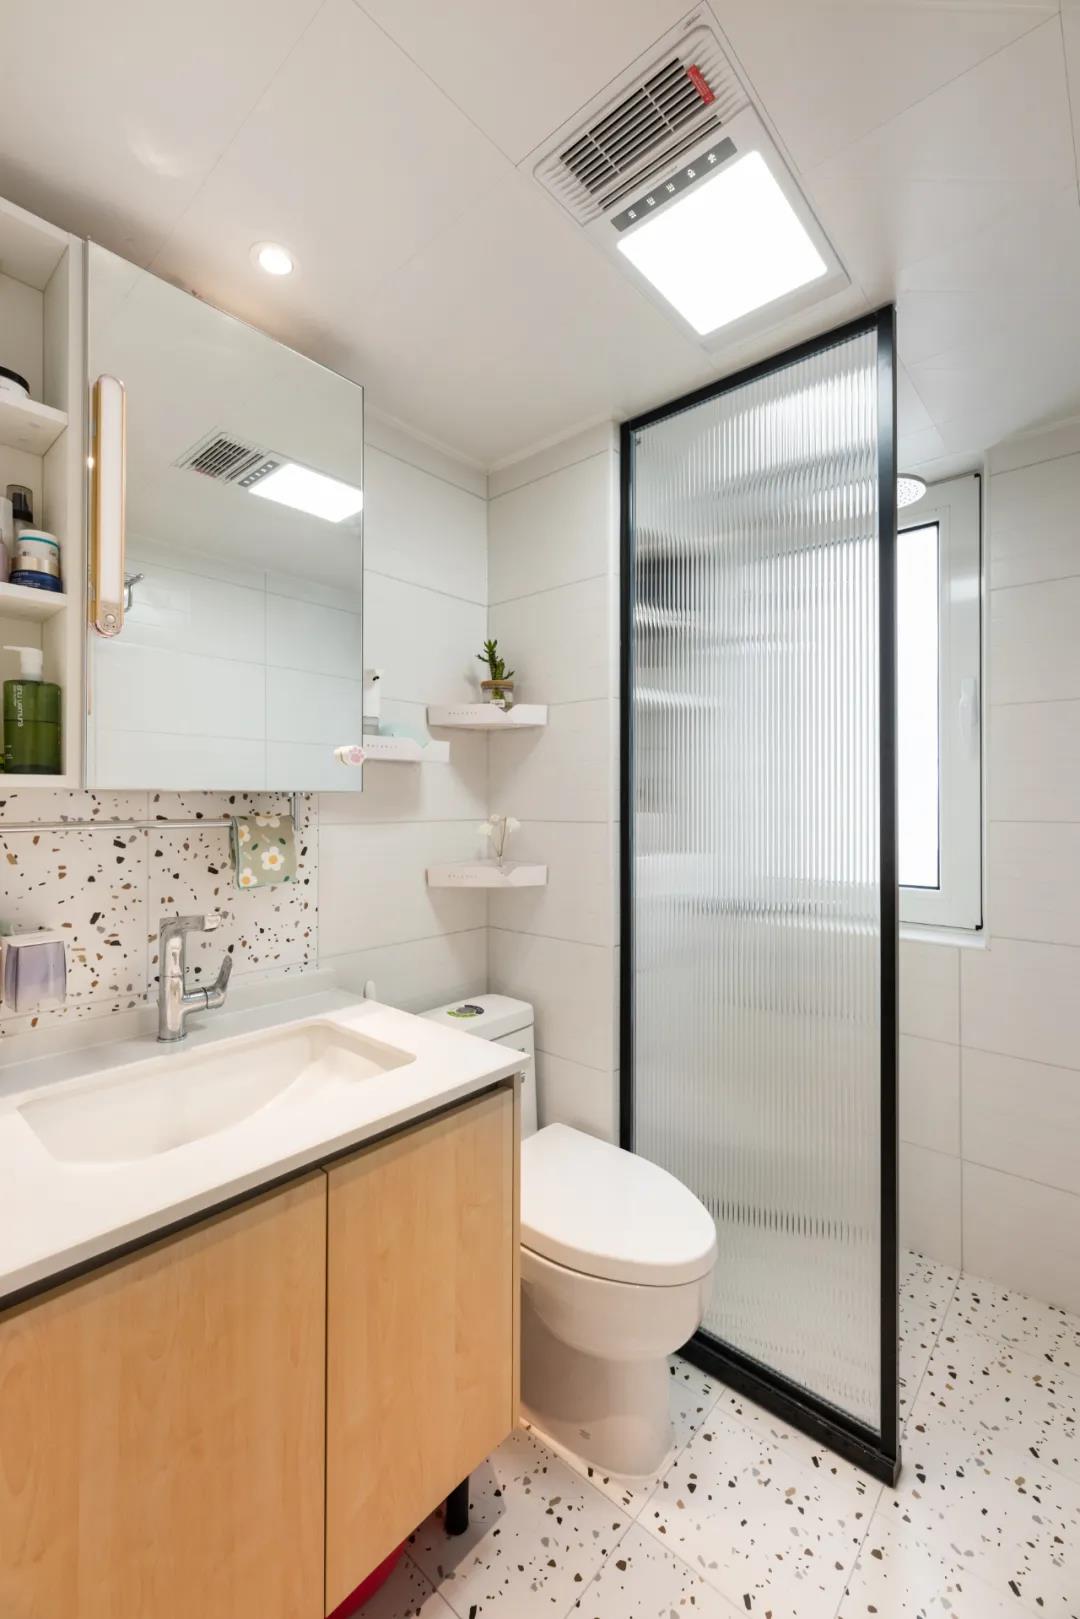 卫生间以白色墙面和地面砖为主，中部使用玻璃做了干湿分离设计。